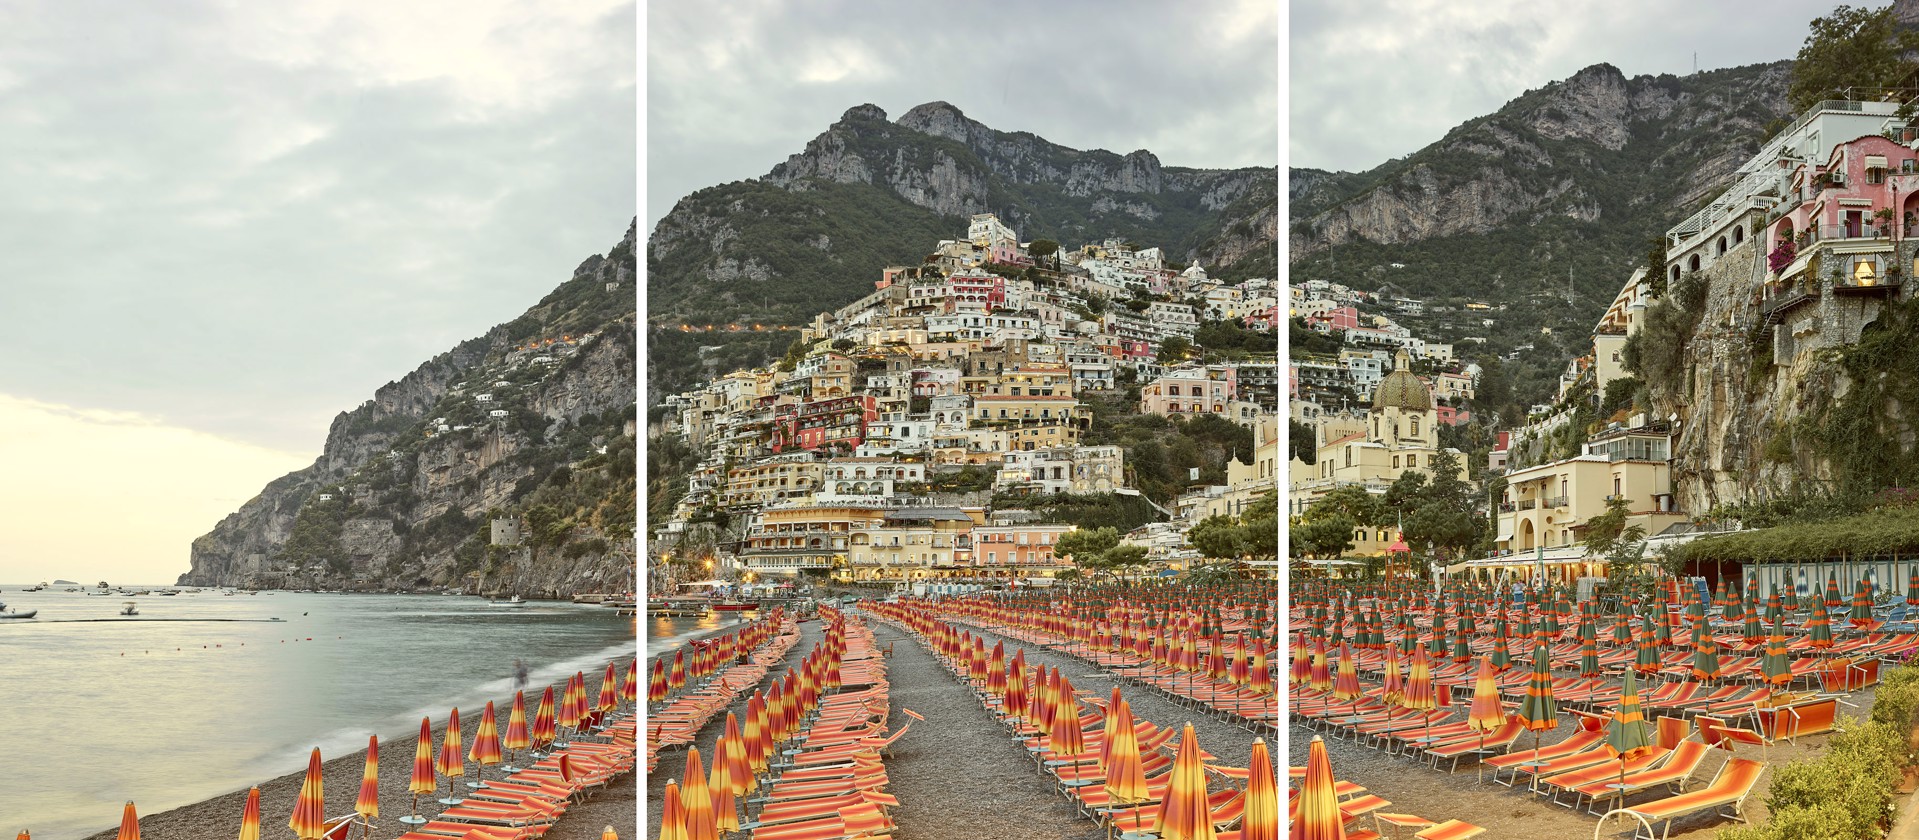 Positano Triptych, Amalfi Coast, Italy by David Burdeny